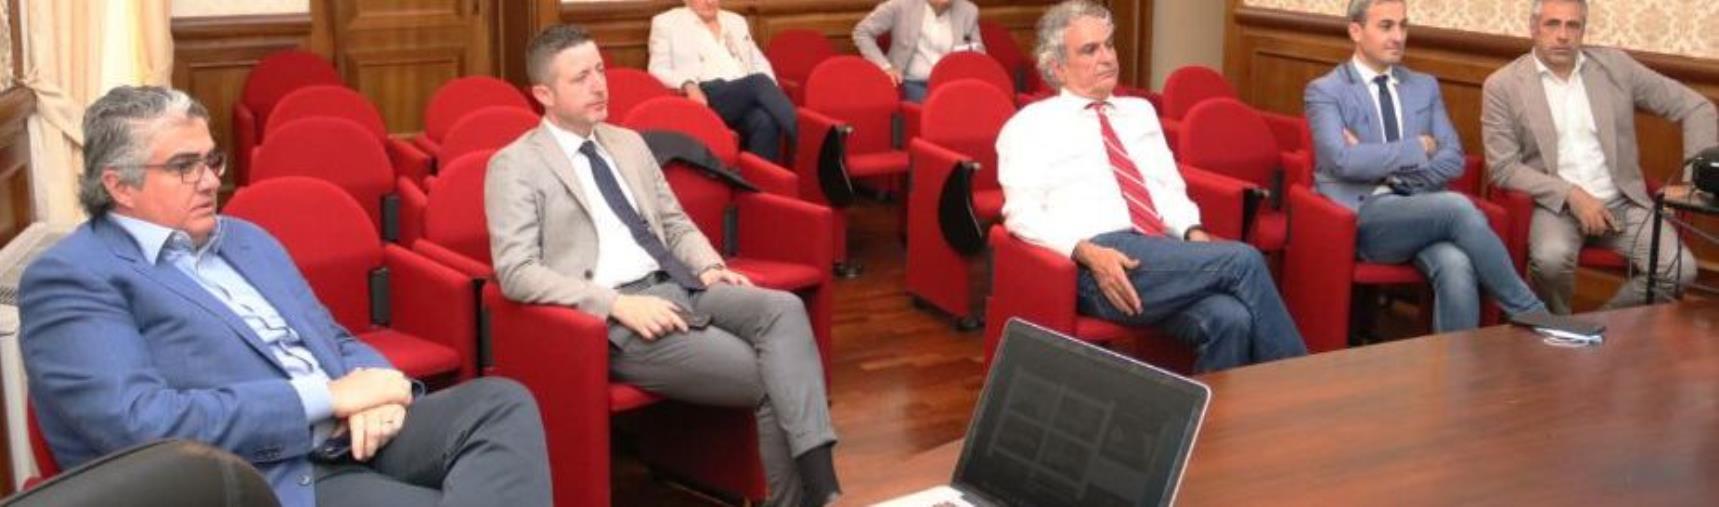 Imprese ed estero, Carè (IV): “Calabria e Mezzogiorno possono essere il motore dello sviluppo nei prossimi anni”